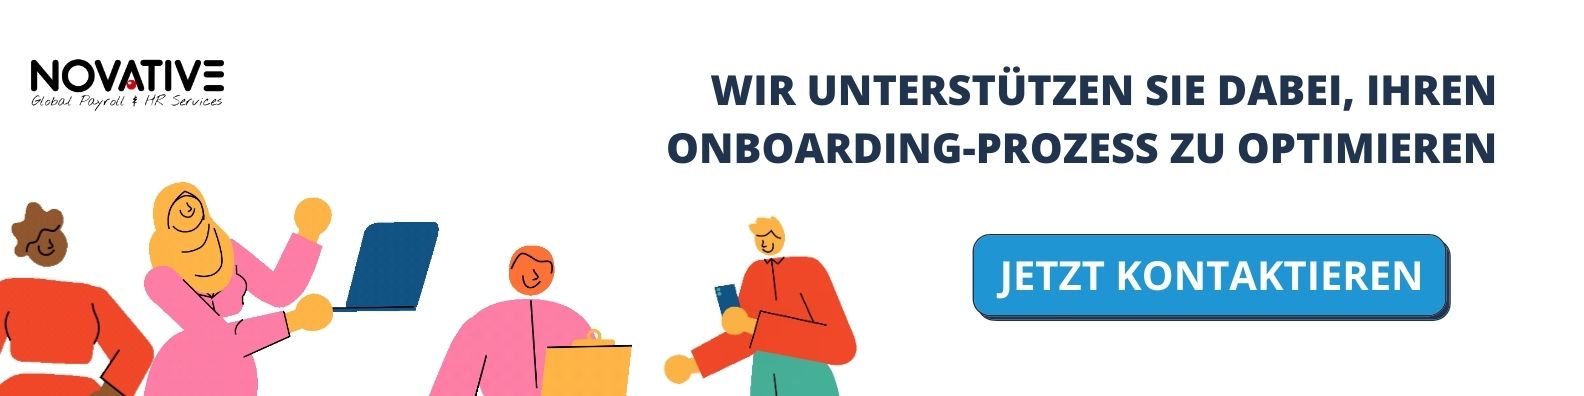 Checkliste Virtuelles Onboarding Werbung. Bild mit farbenfrohen Charikaturen sagt: Wir unterstützen Sie dabei, IHren nboarding Prozess zu Optimieren. Jetzt Kontaktieren